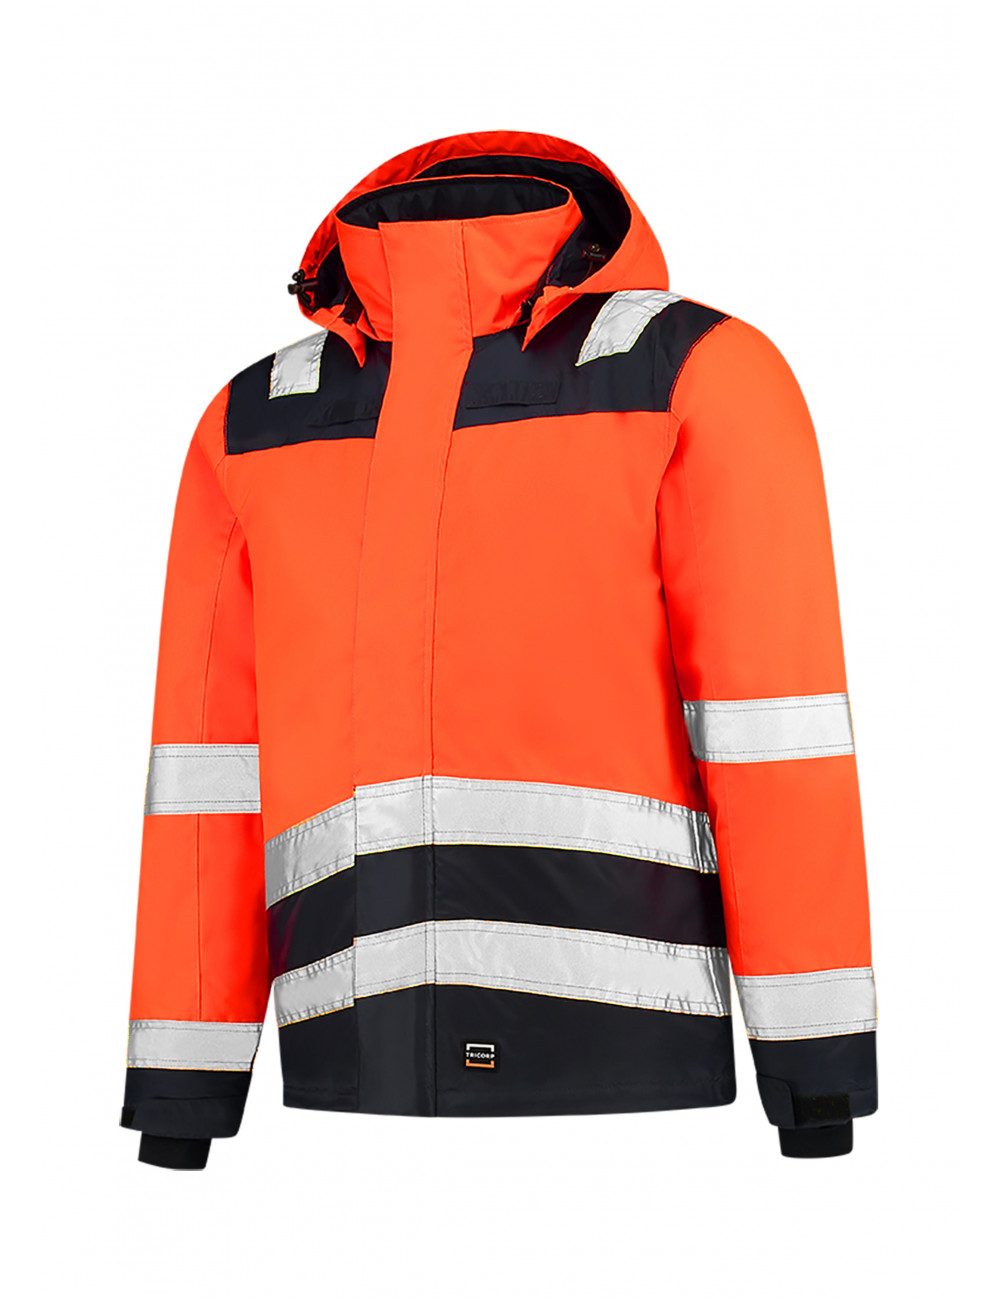 Unisex-Arbeitsjacke, Midi-Parka, hohe Sichtbarkeit, zweifarbig, T51, fluoreszierendes Orange, Adler Tricorp